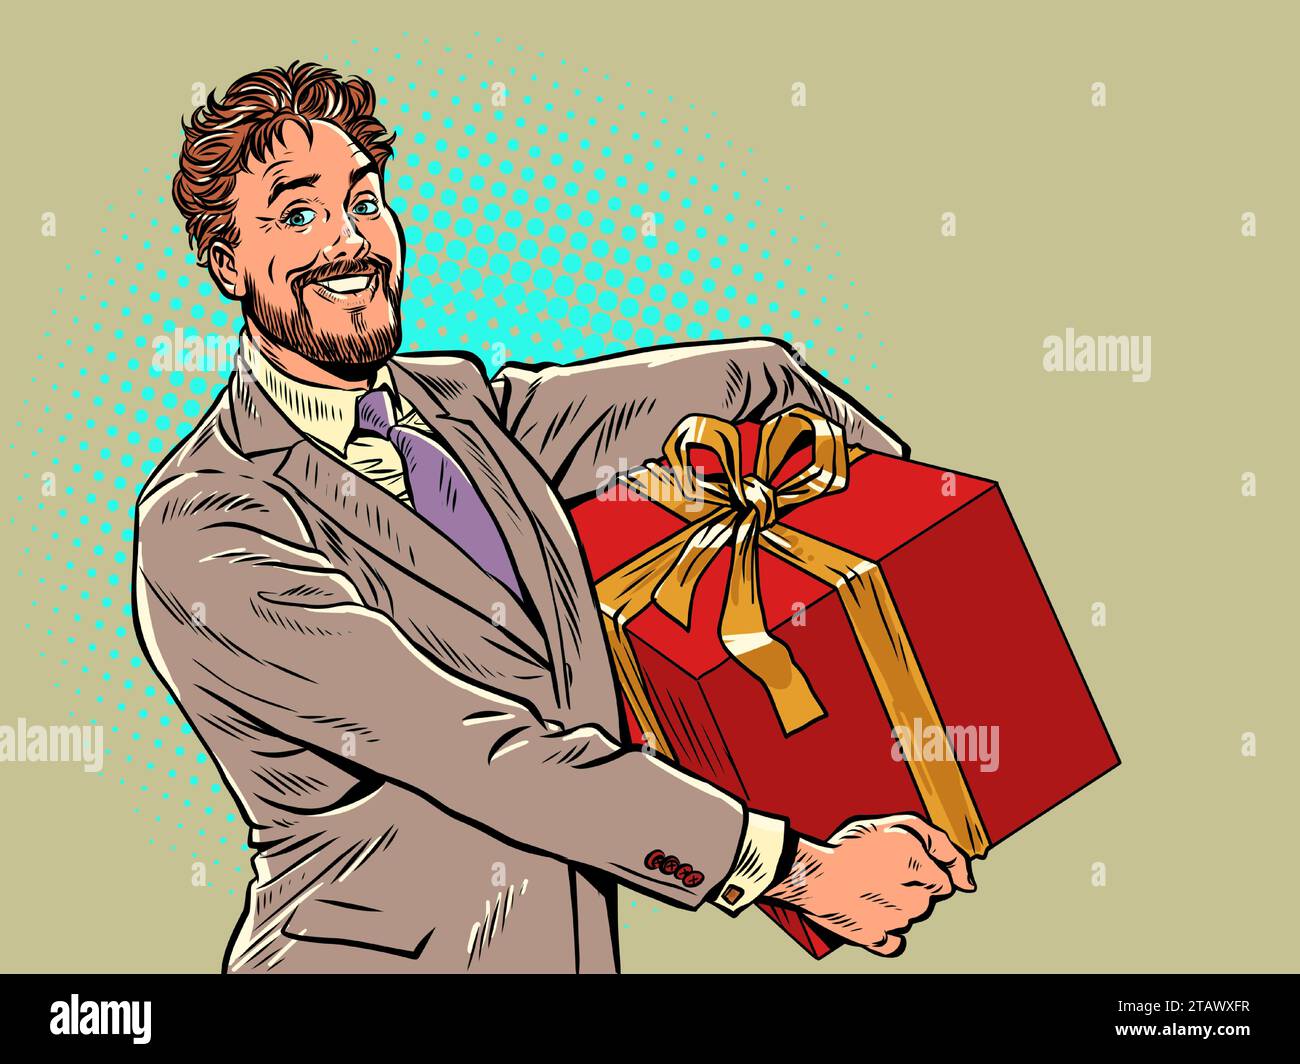 Lieferung von Geschenken aus aller Welt von einem vertrauenswürdigen Unternehmen. Ein Mann im Anzug hält ein großes rotes Geschenk. Weihnachtsfeiertage und Vorbereitung auf sie. Pop-Ar Stock Vektor